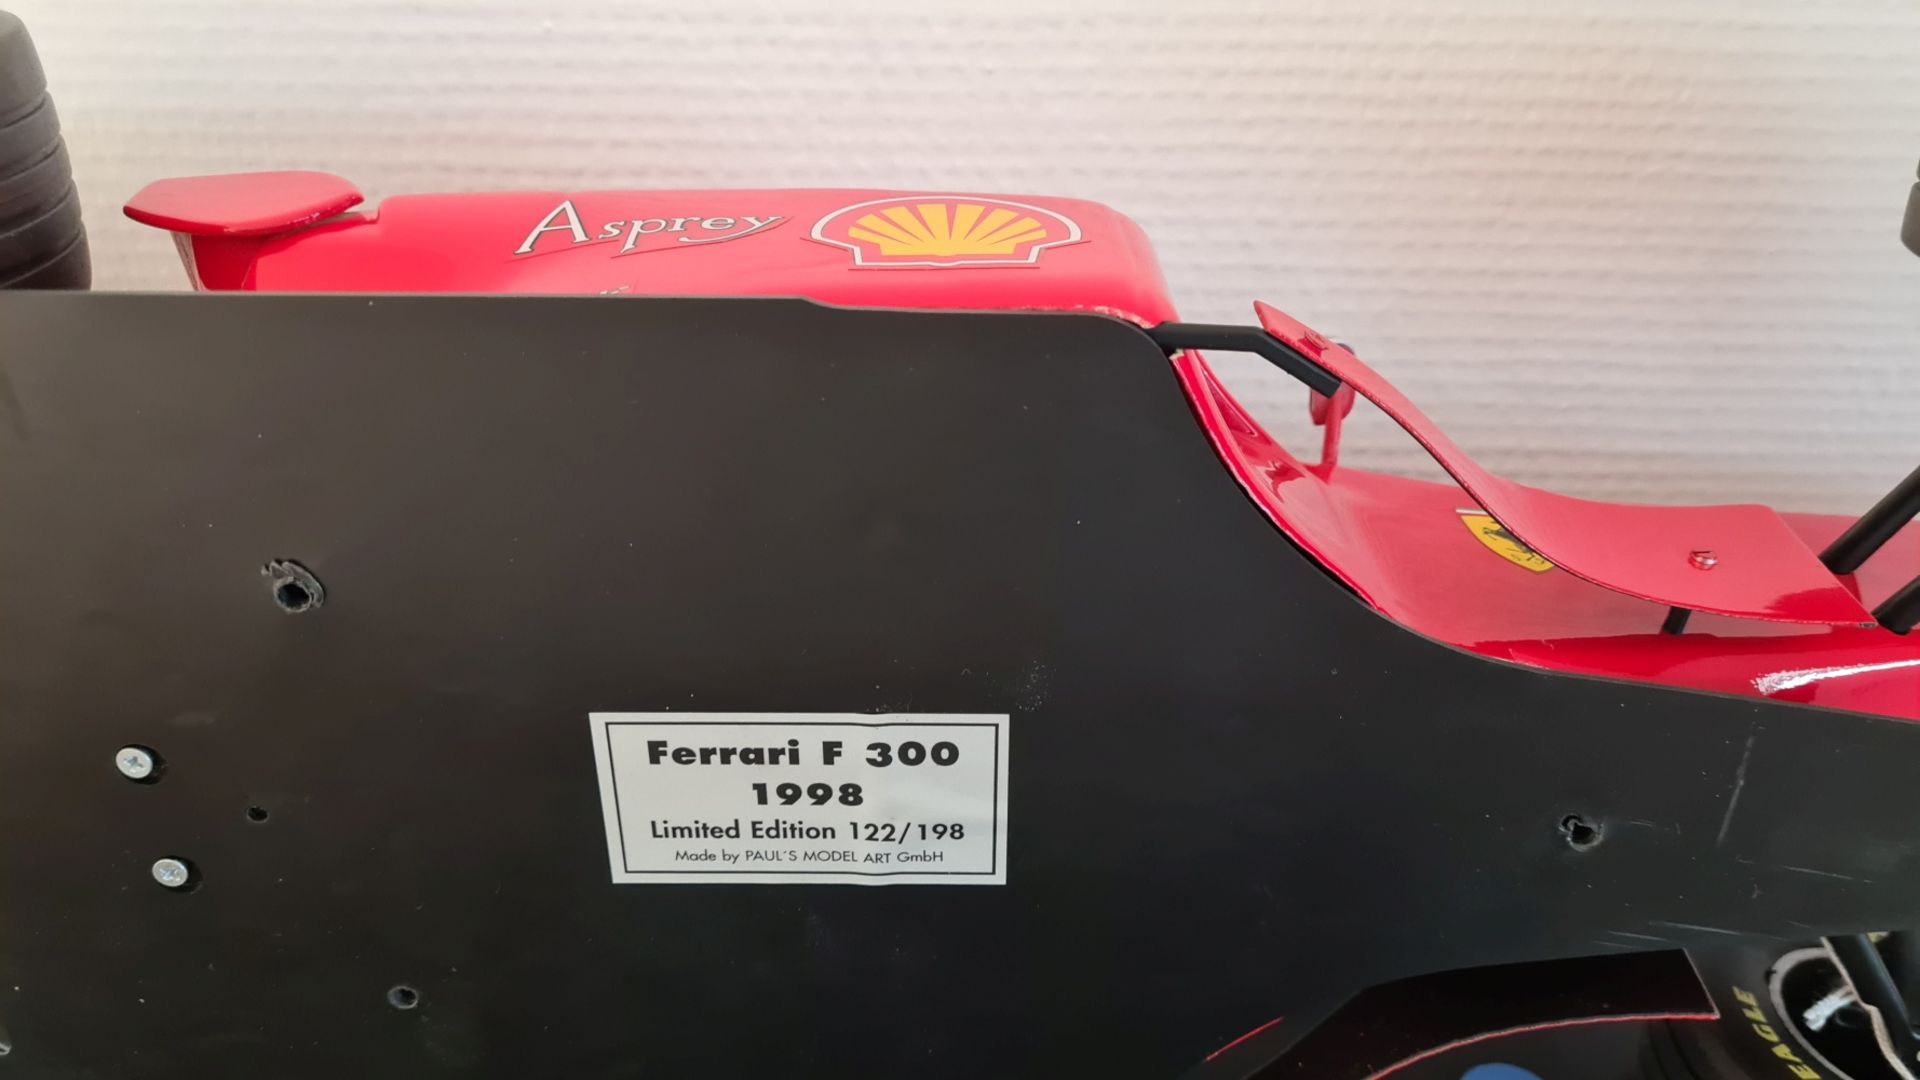 1998, FERRARI F 300 in the measuring stick 1: 8, driver Michael Schumacher, liftoff no. 3, limited e - Image 5 of 6